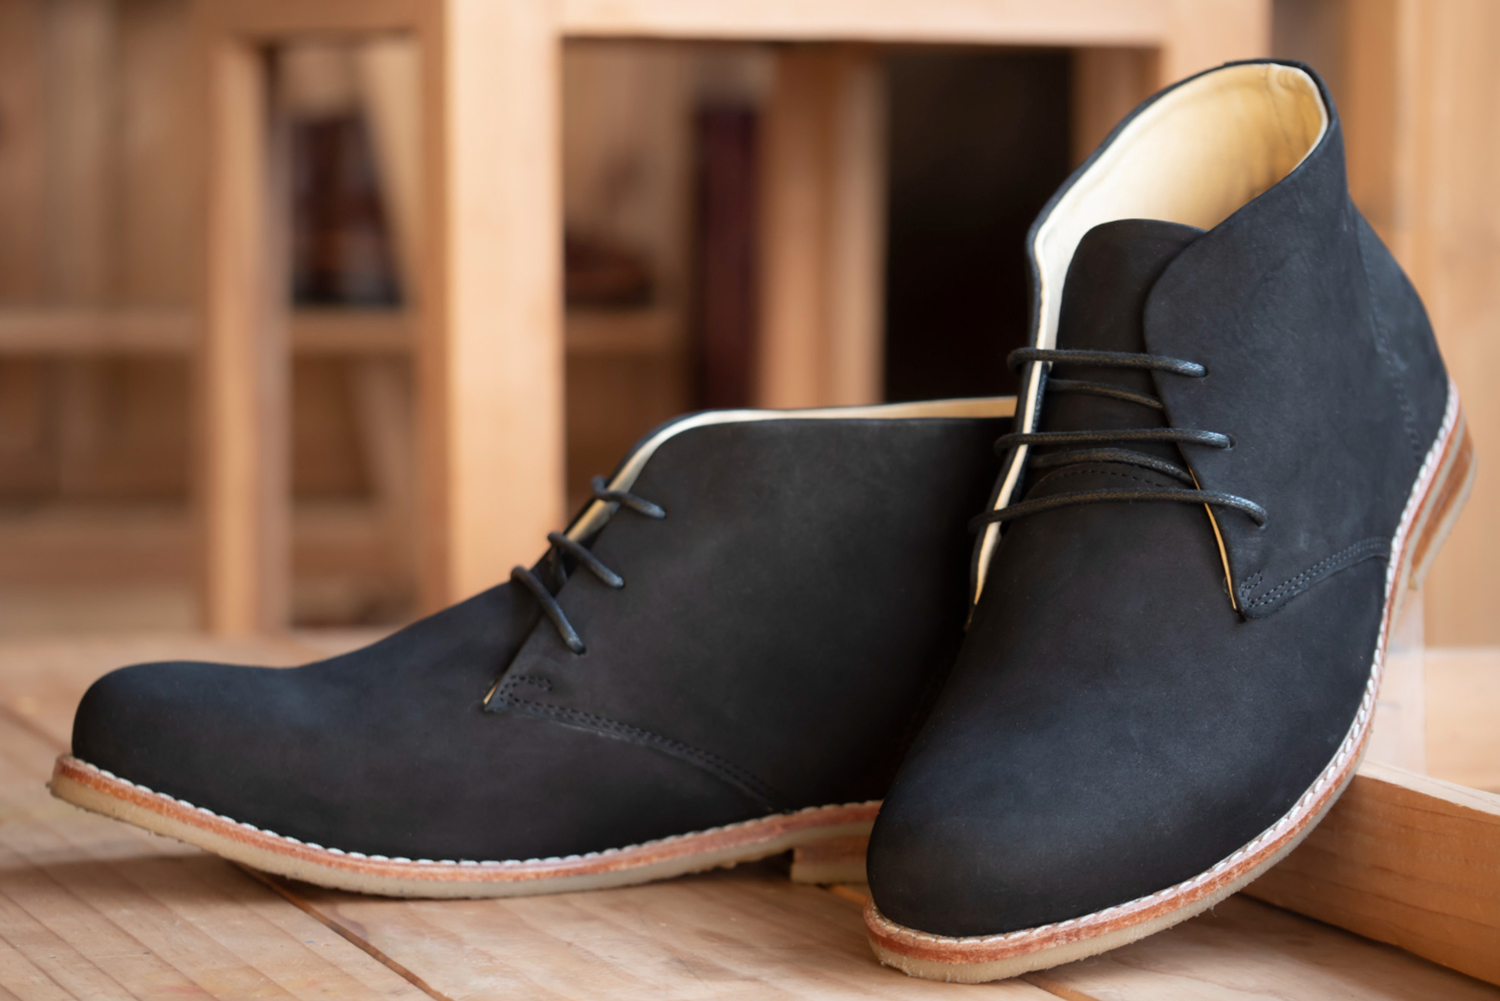 men-fashion-black-boots-leather-shoes-store edit